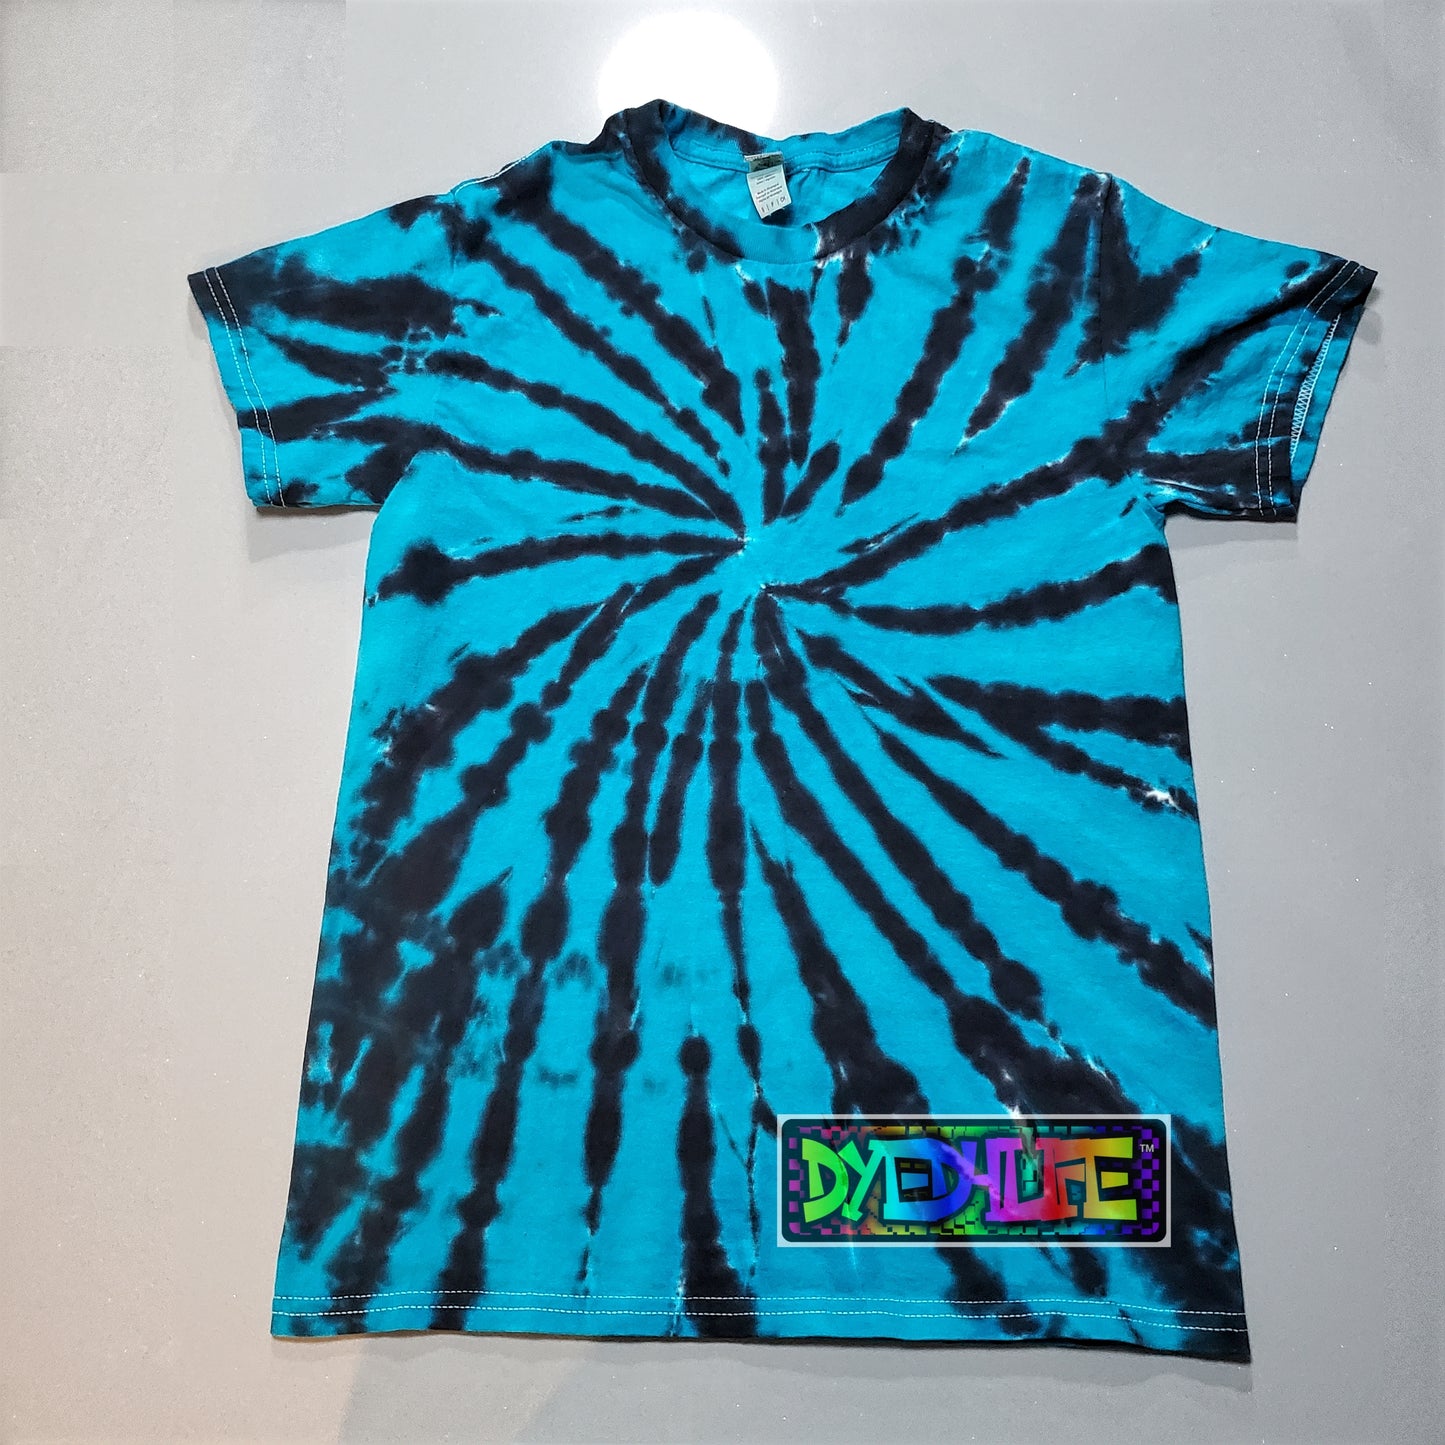 Original Spiral Design Tie Dye T shirt